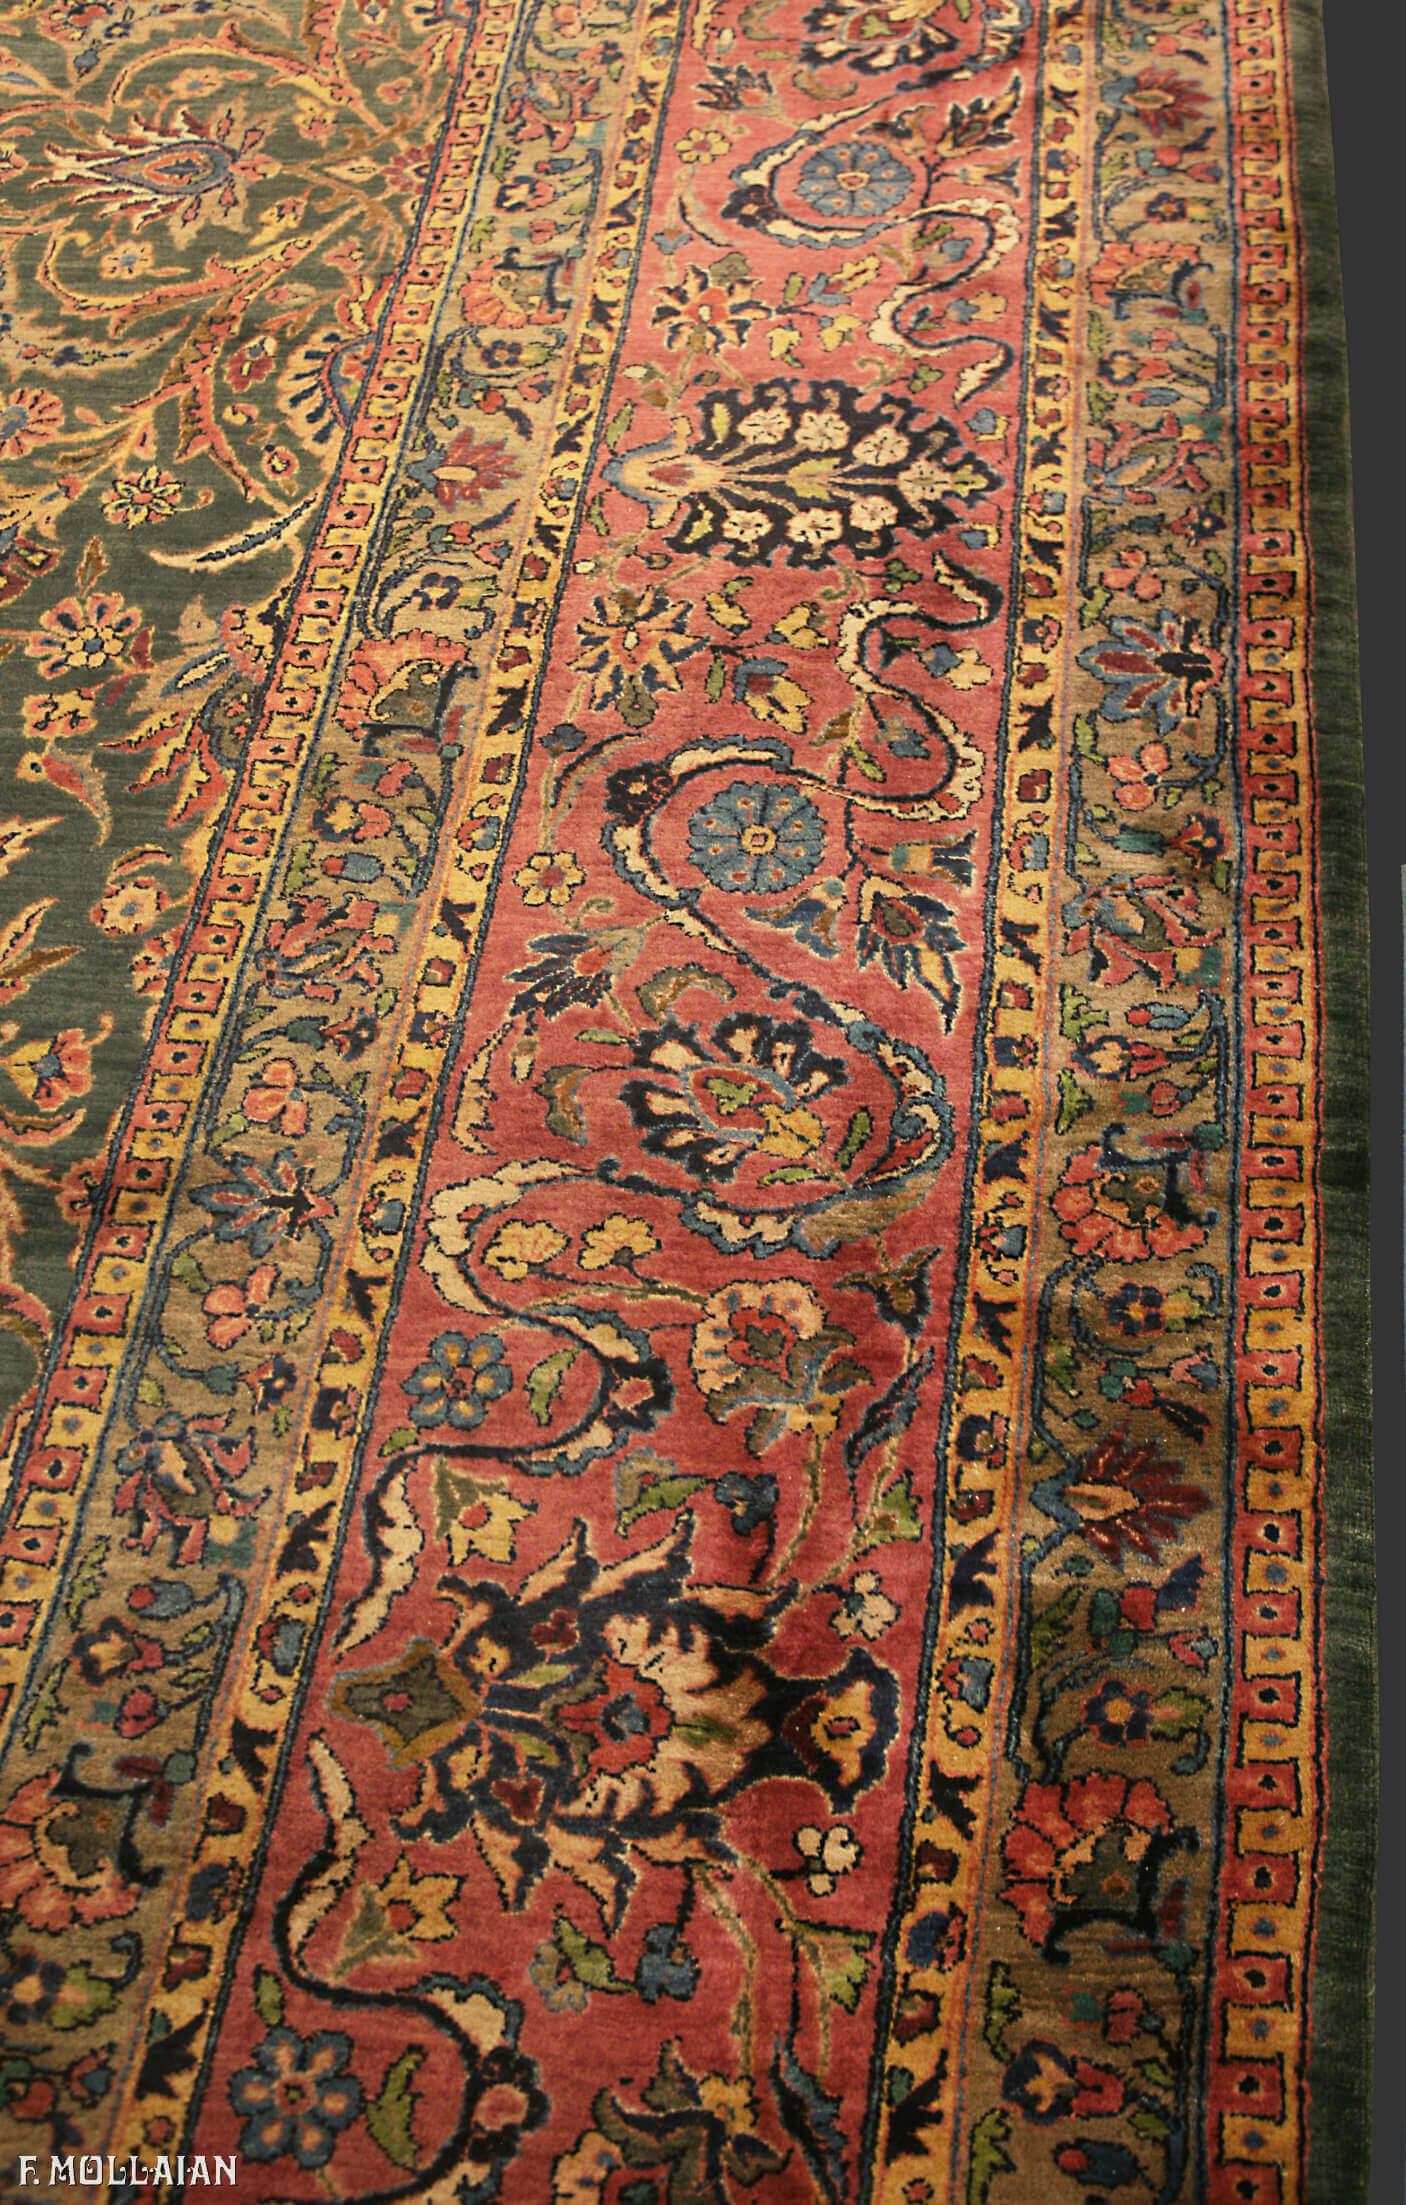 Teppich Persischer Antiker Kashan Manchester n°:97593275